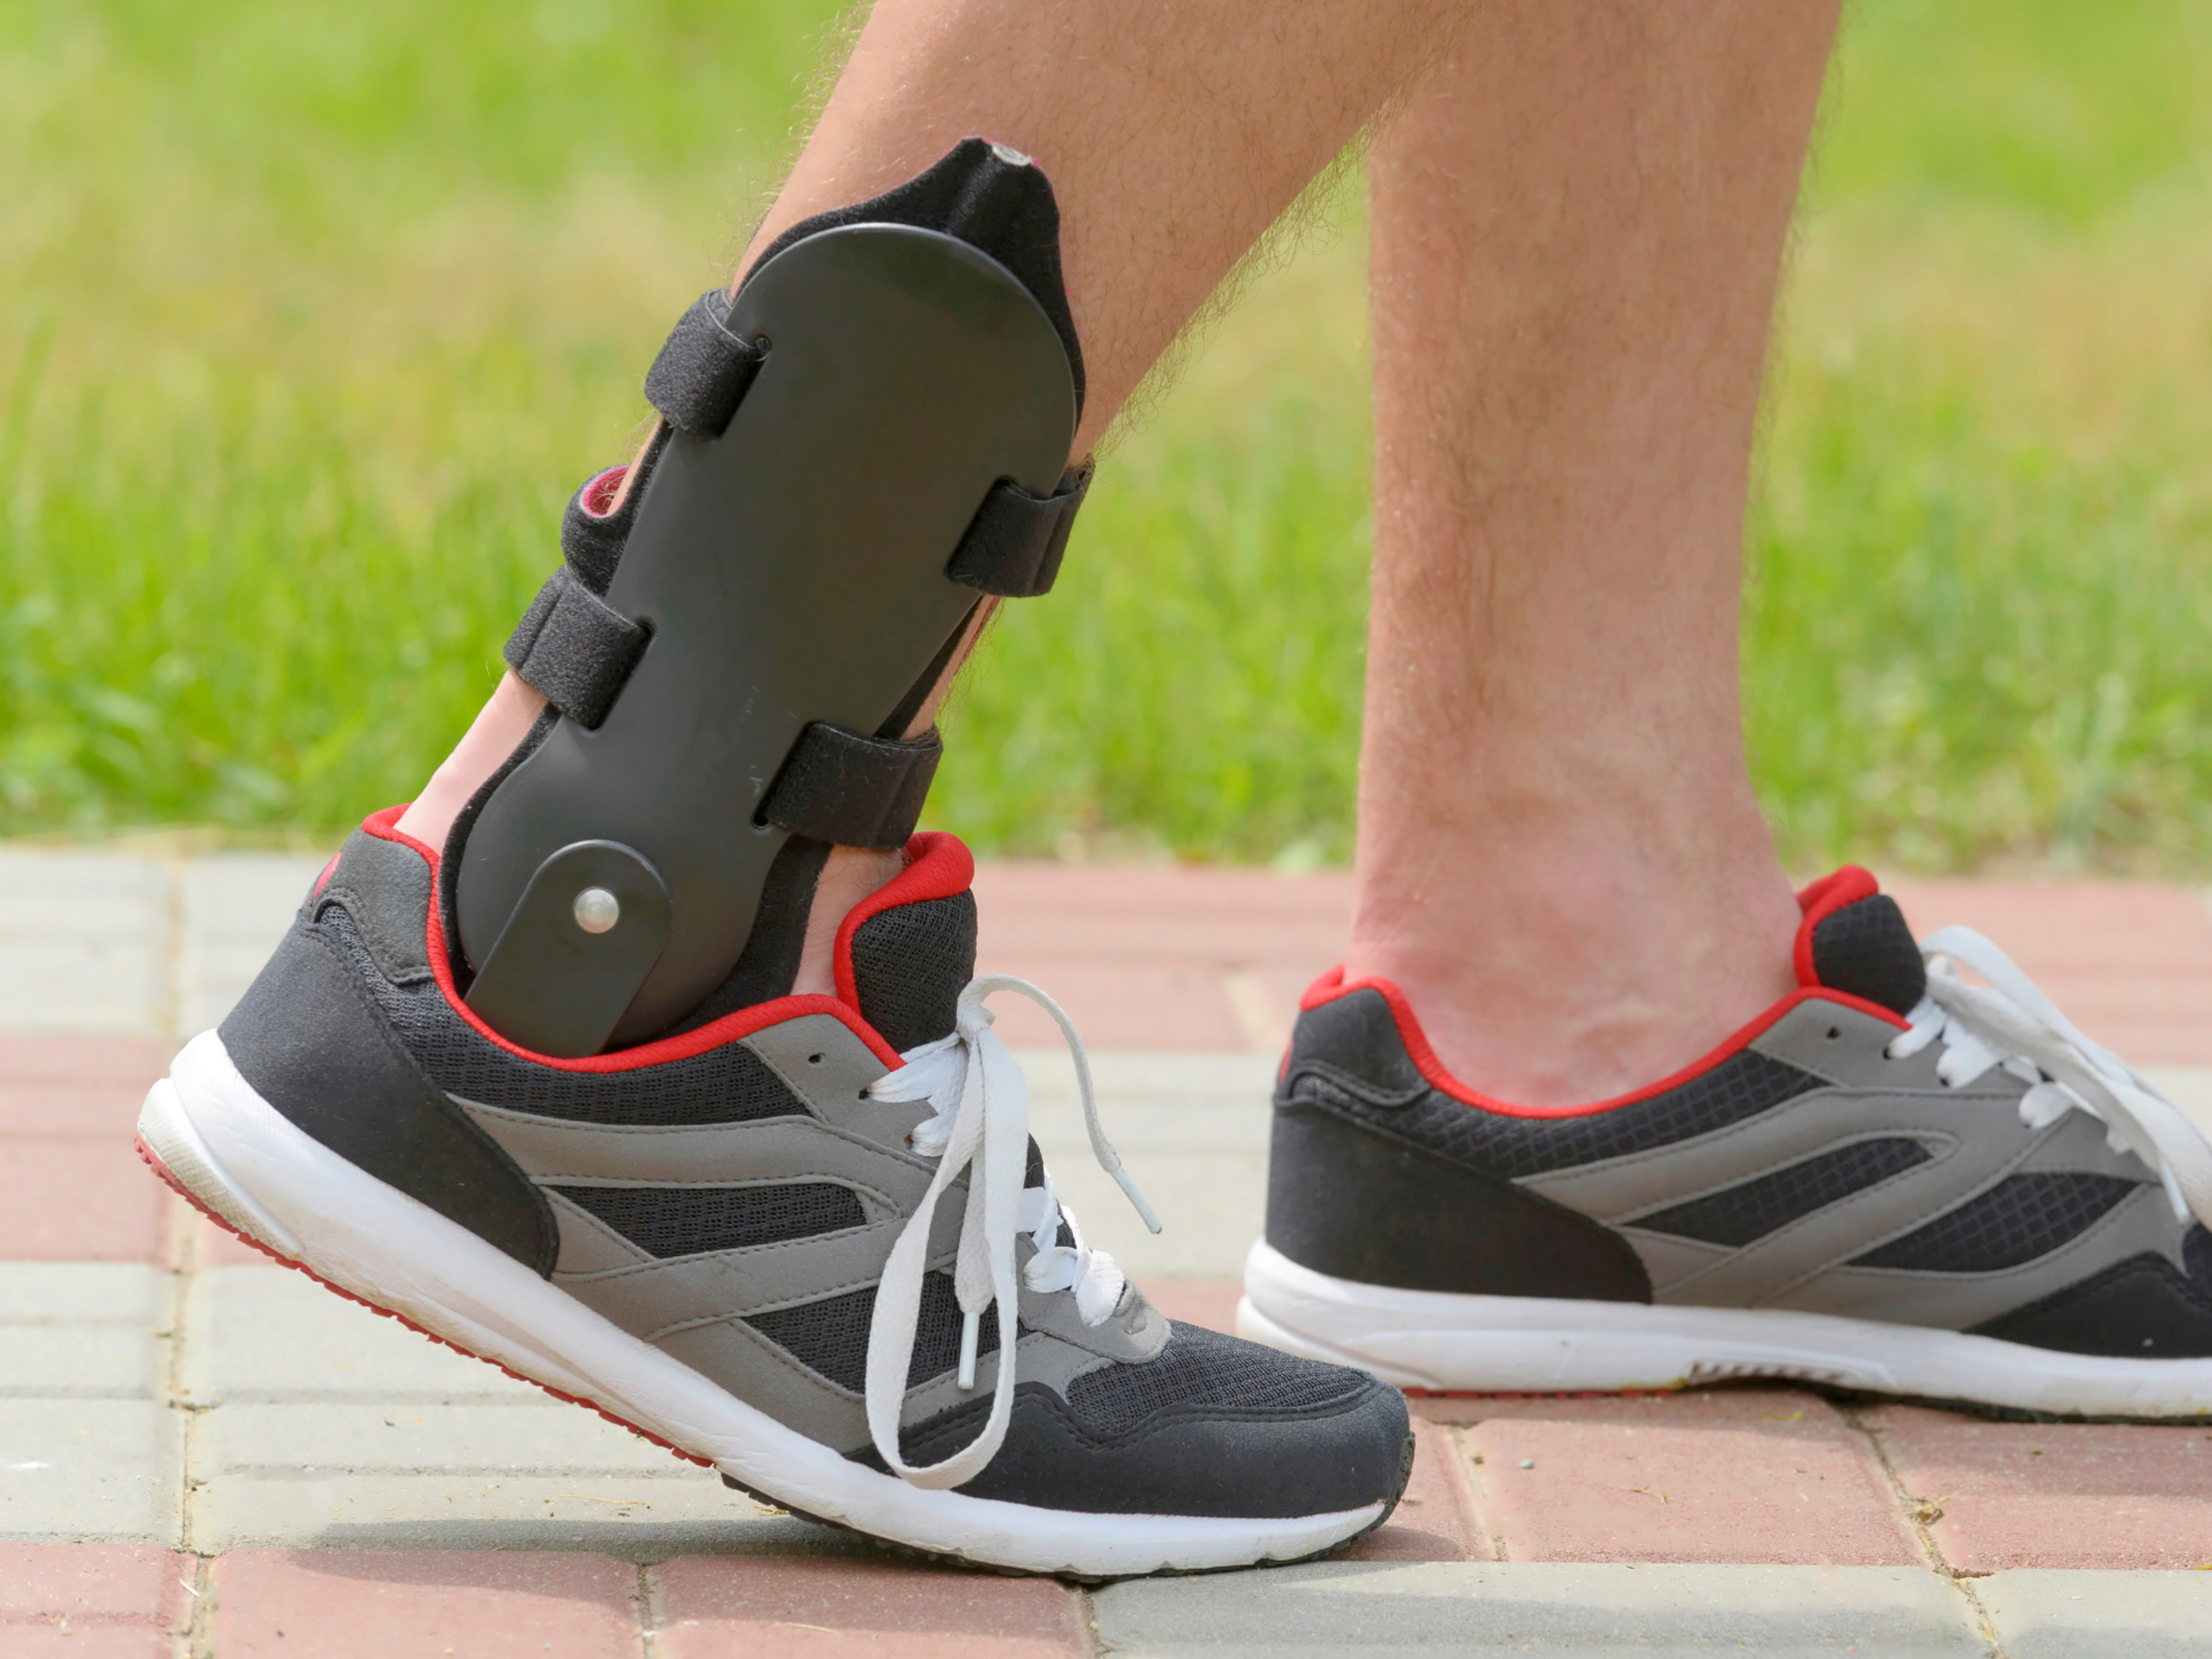 Las ortesis para esguinces de tobillo actúan restringiendo el rango de movimiento de inversión y eversión para que puedas caminar y correr sin forzar tus ligamentos.